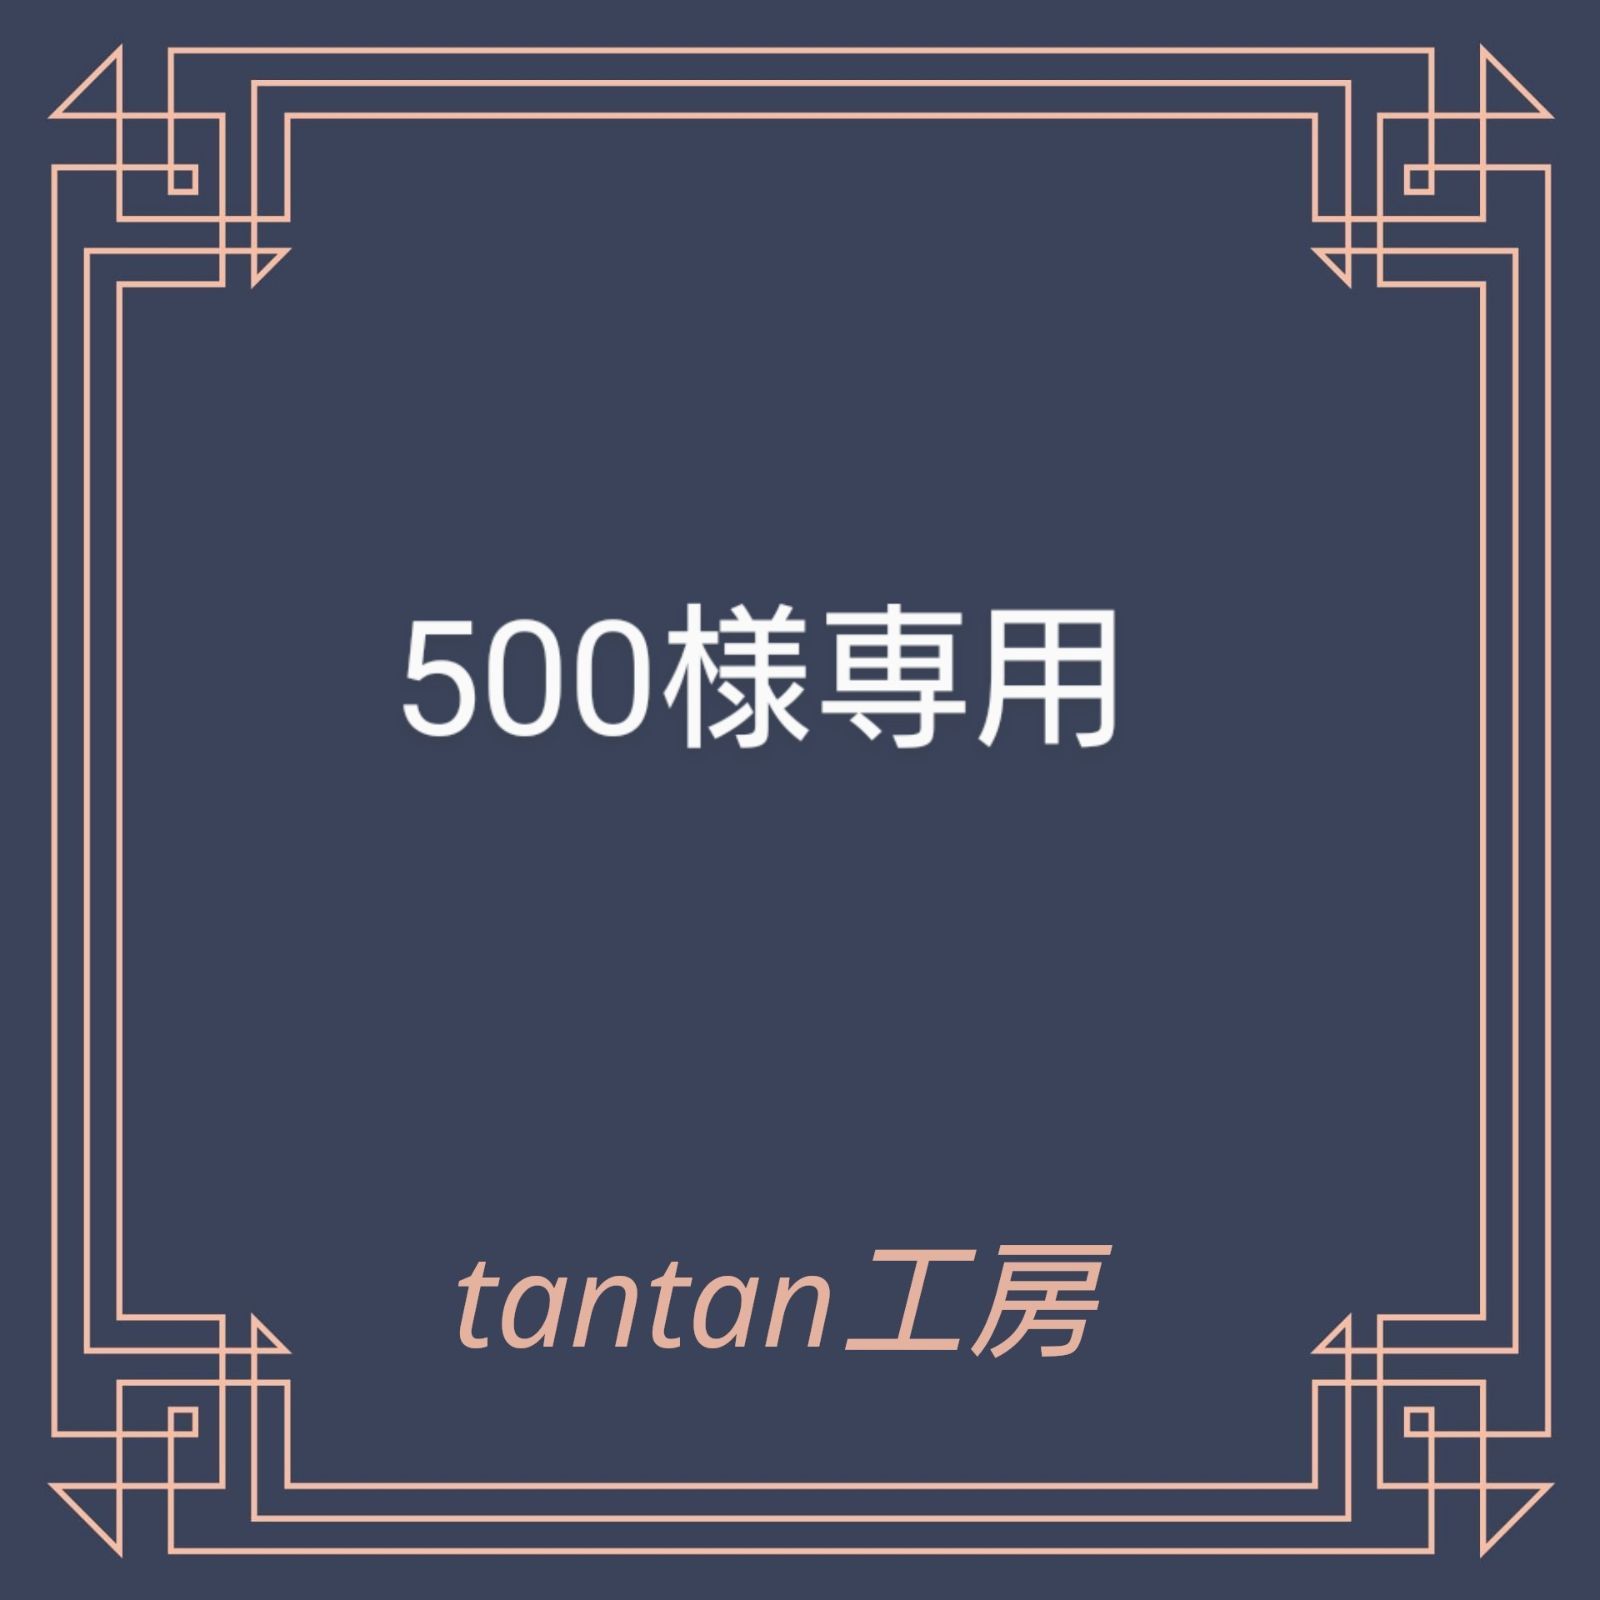 500様専用 tantanおまかせお菓子セット - メルカリ